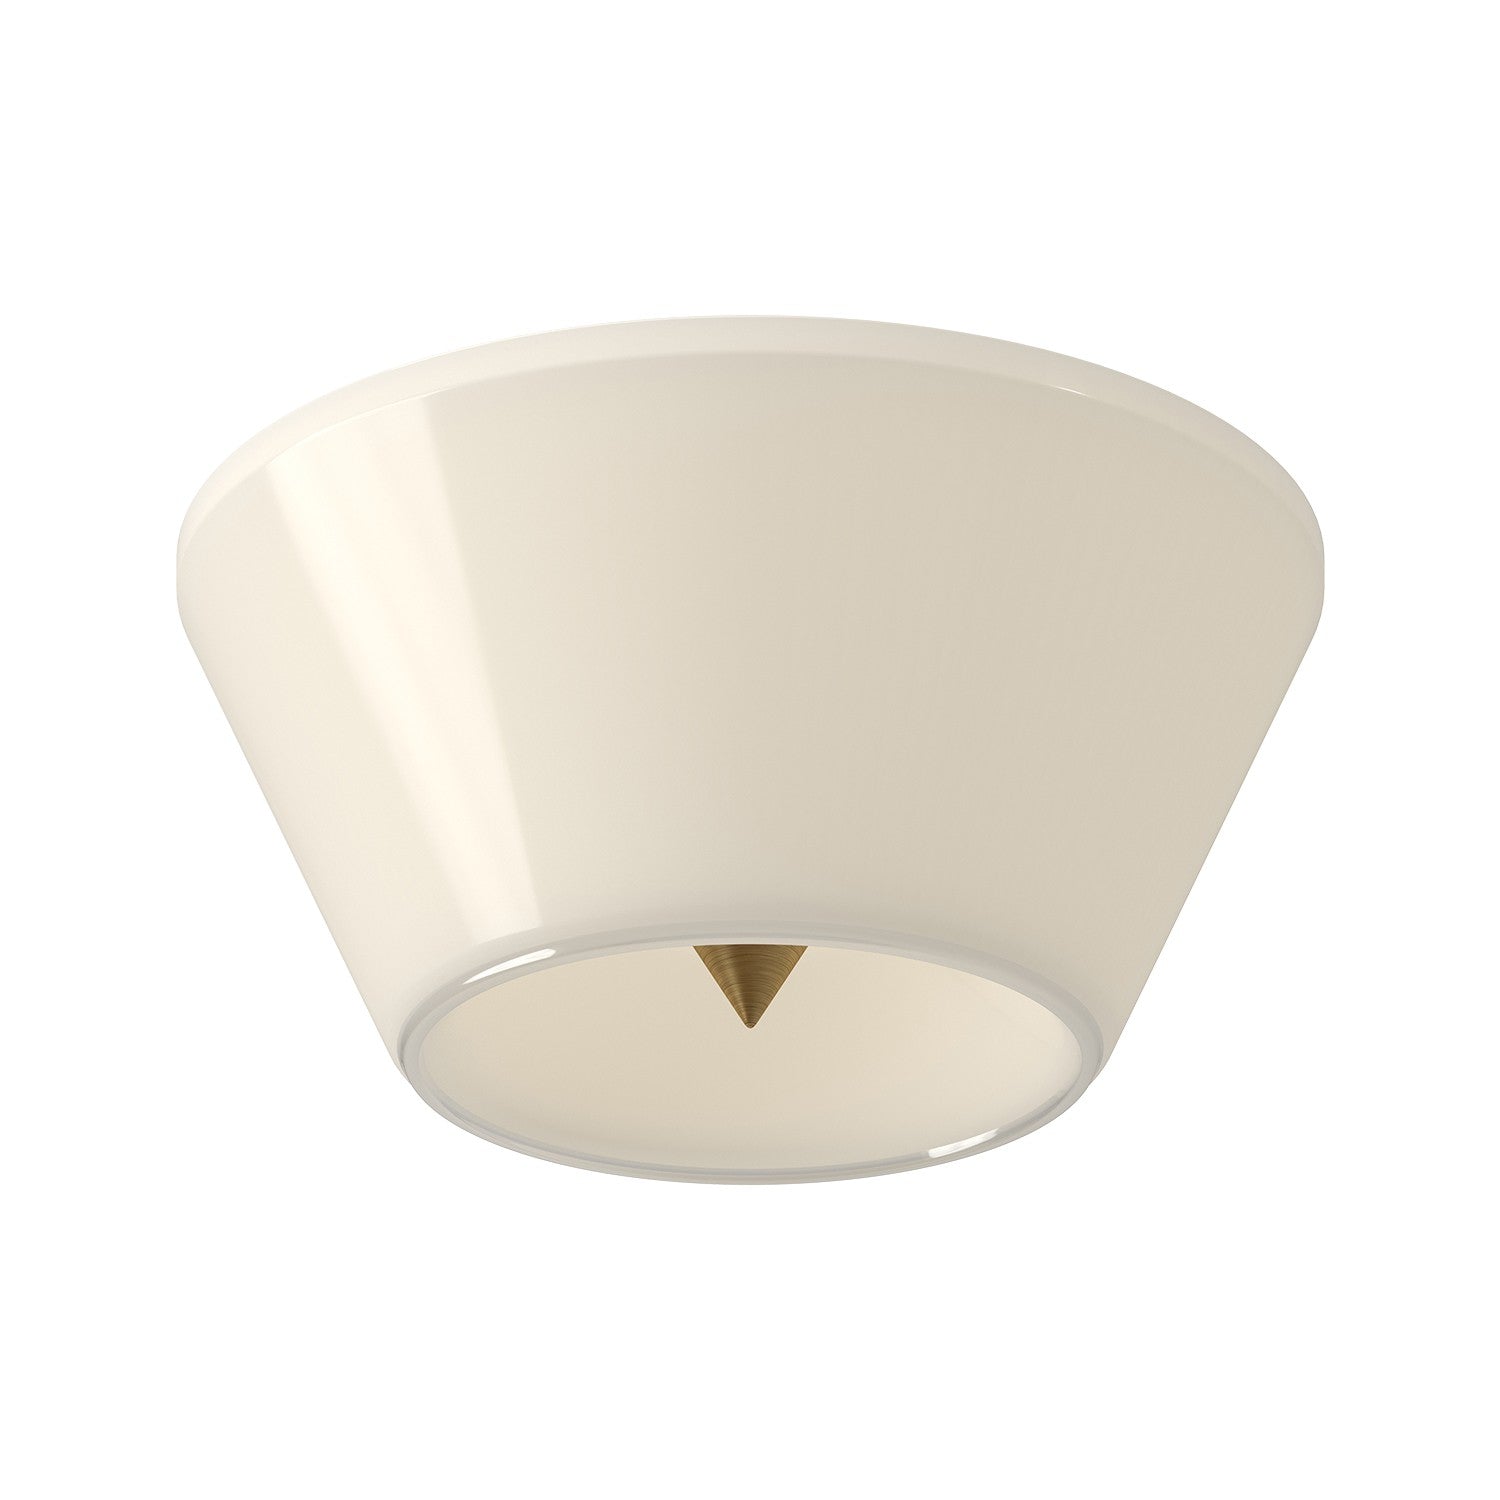 Kuzco Lighting - FM45710-BG/GO - LED Flush Mount - Holt - Brushed Gold/Glossy Opal Glass